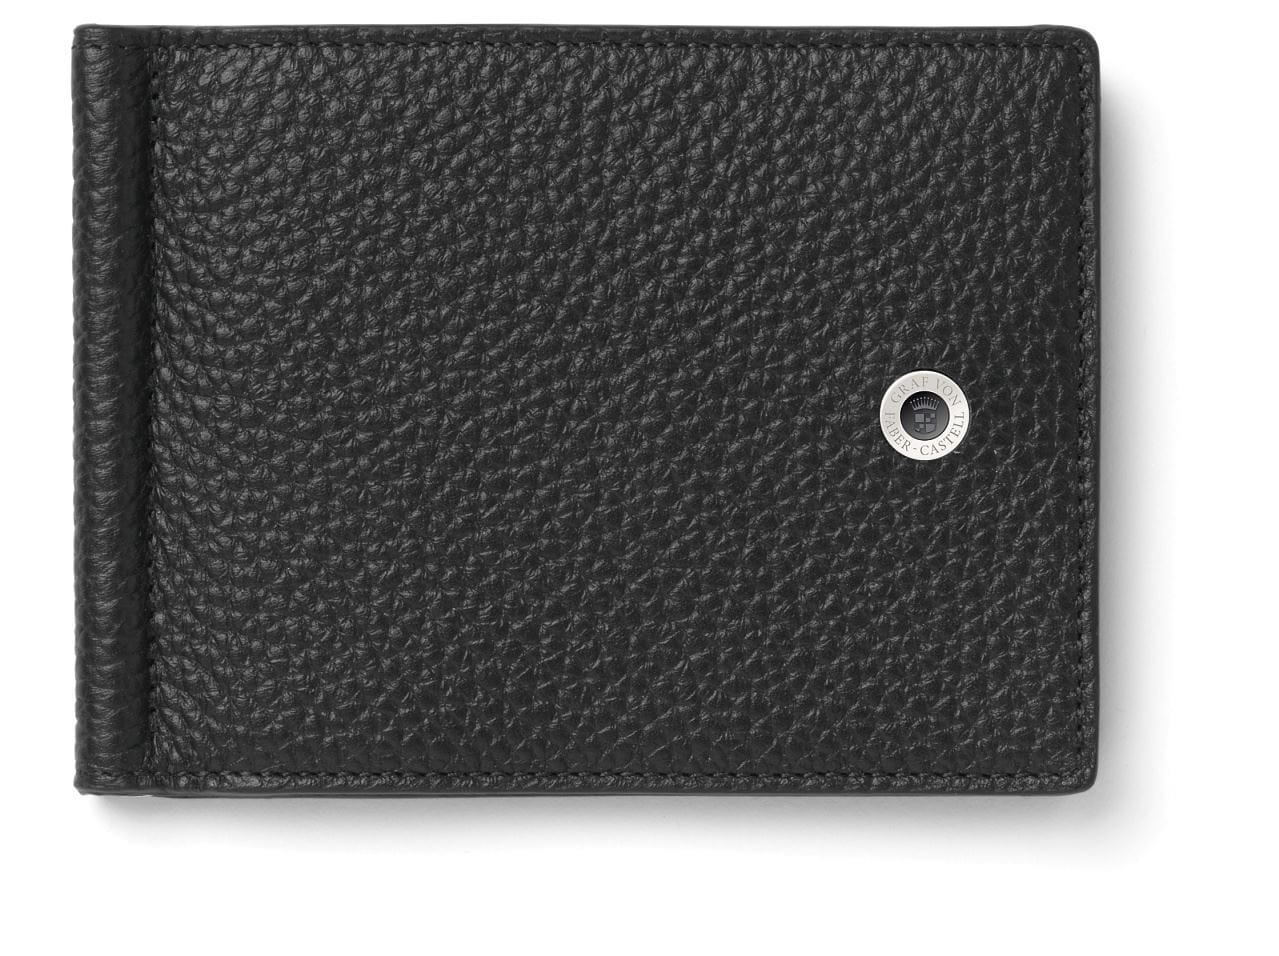 Graf-von-Faber-Castell - Porte-carte de crédit avec pince à billets Cashmere, Noir